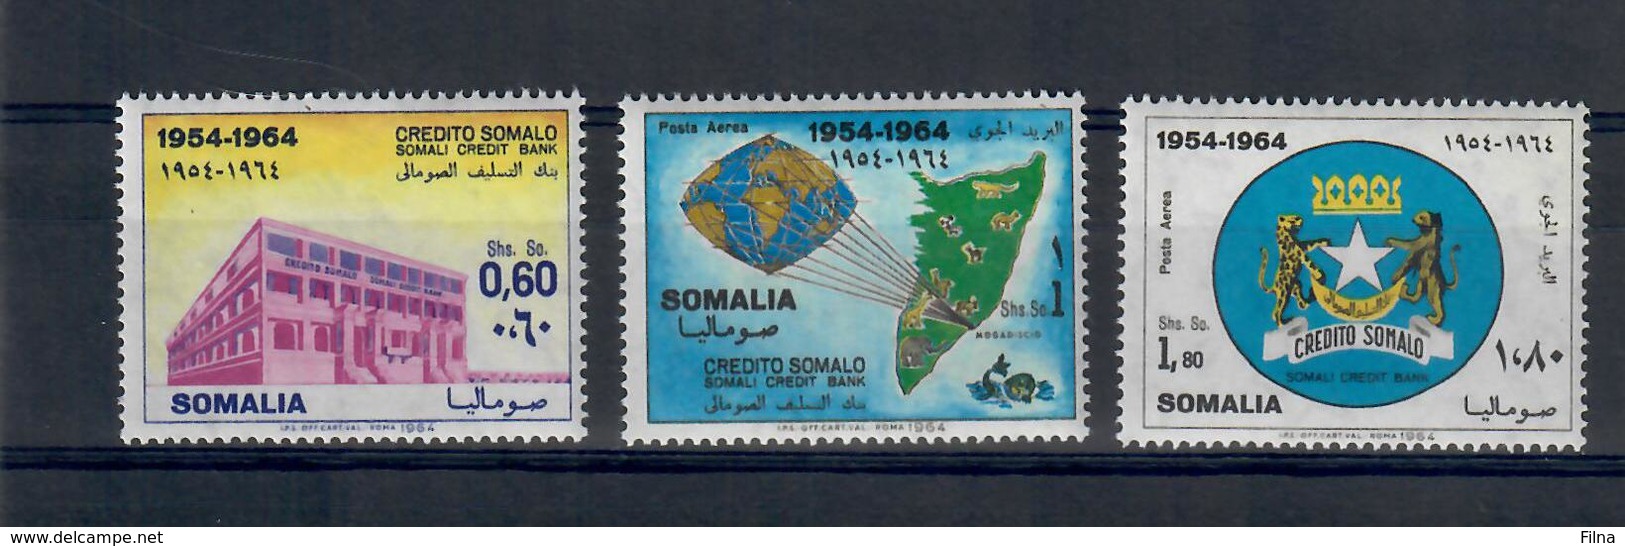 SOMALIA 1964 - 10 ANNI CREDITO SOMALO  - MNH ** - Somalia (1960-...)